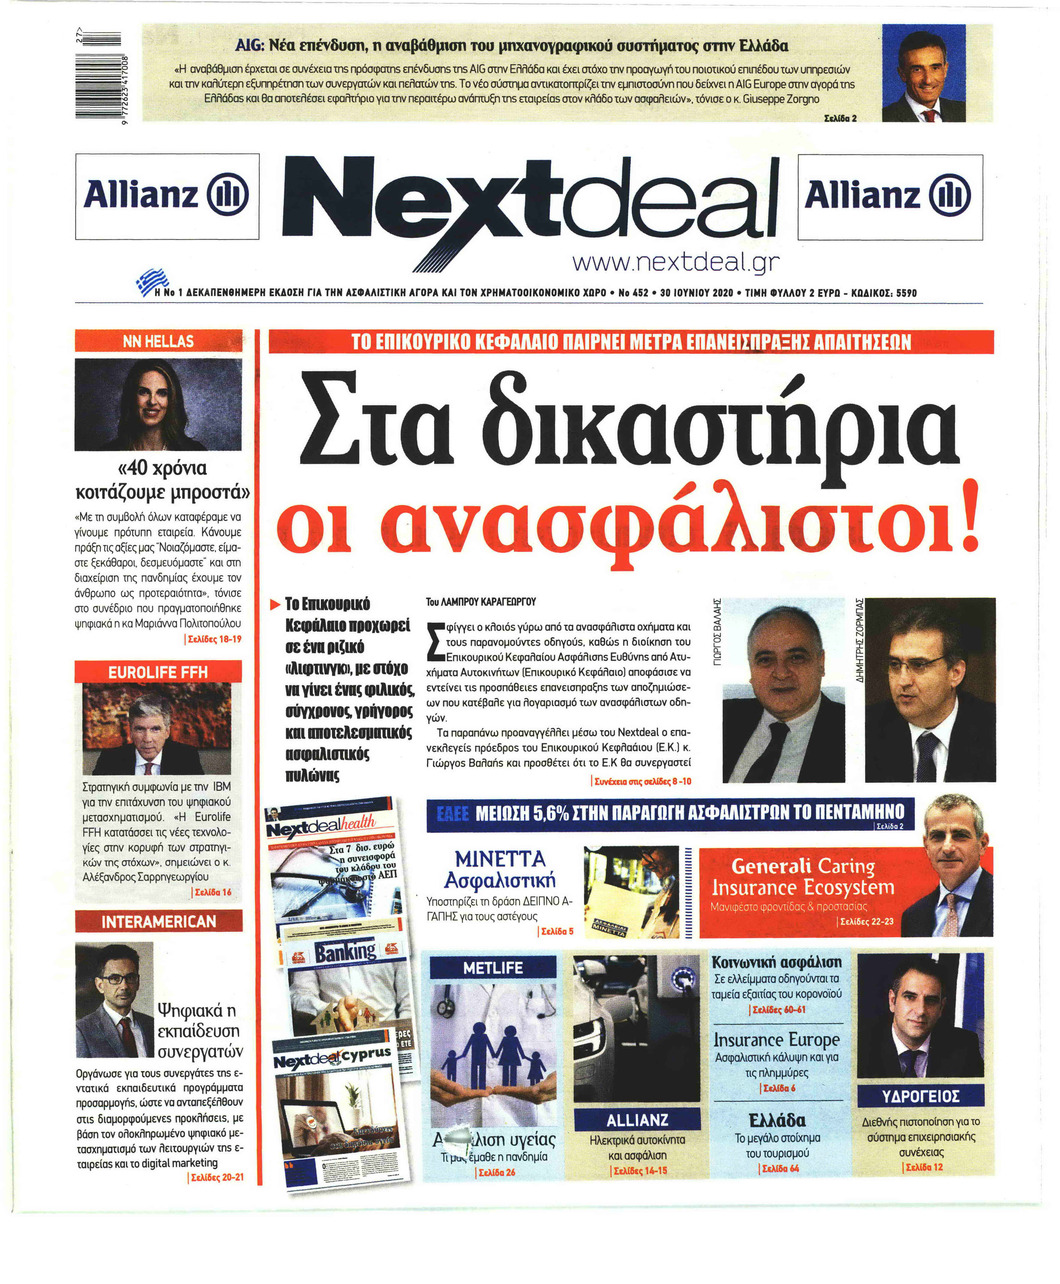 Πρωτοσέλιδο εφημερίδας NextDeal